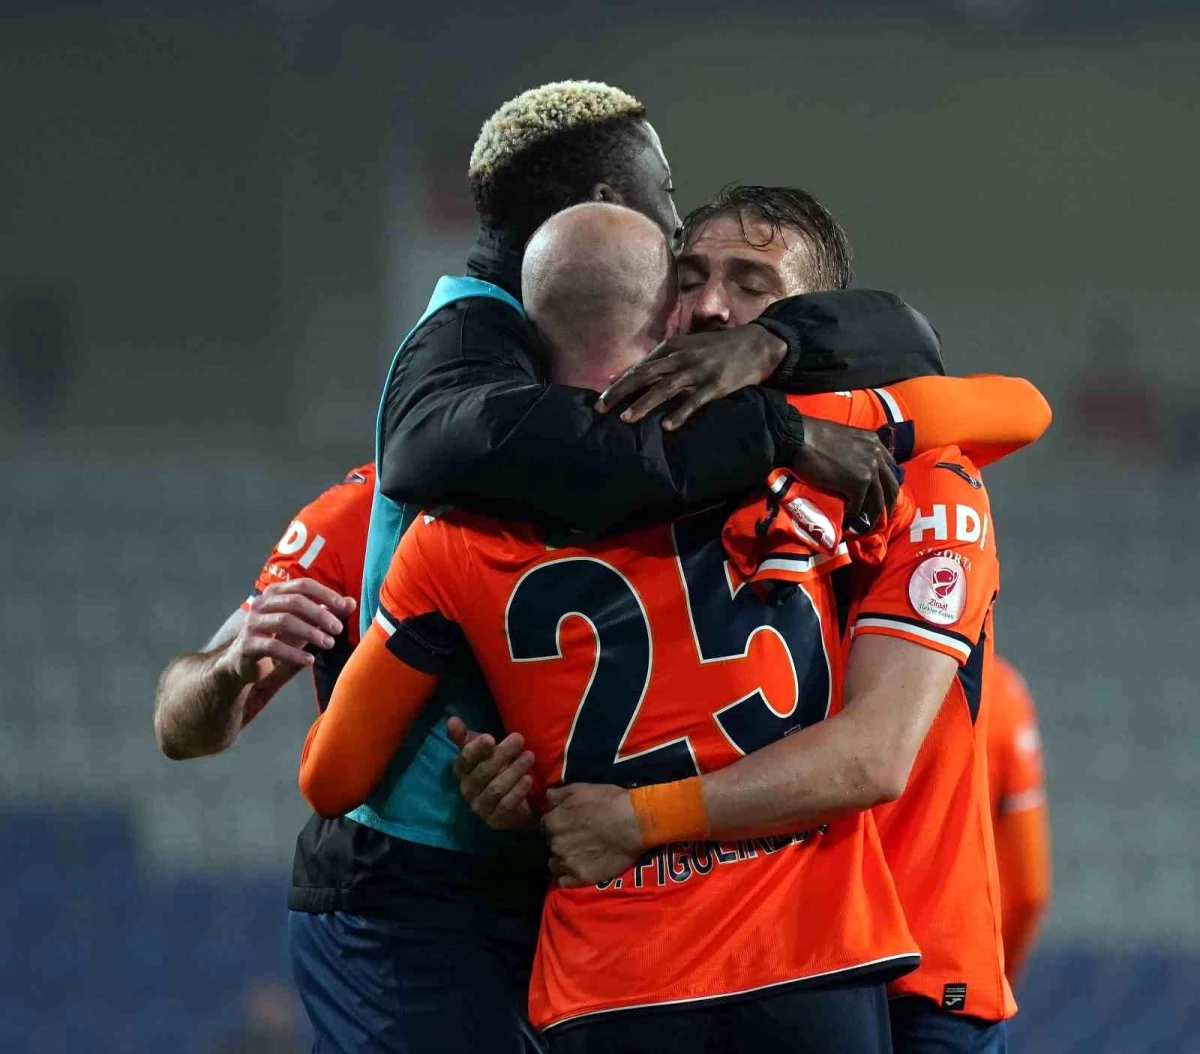 Medipol Başakşehir, kuruluşundan bu yana en fazla maç oynadığı sezonu yaşadı